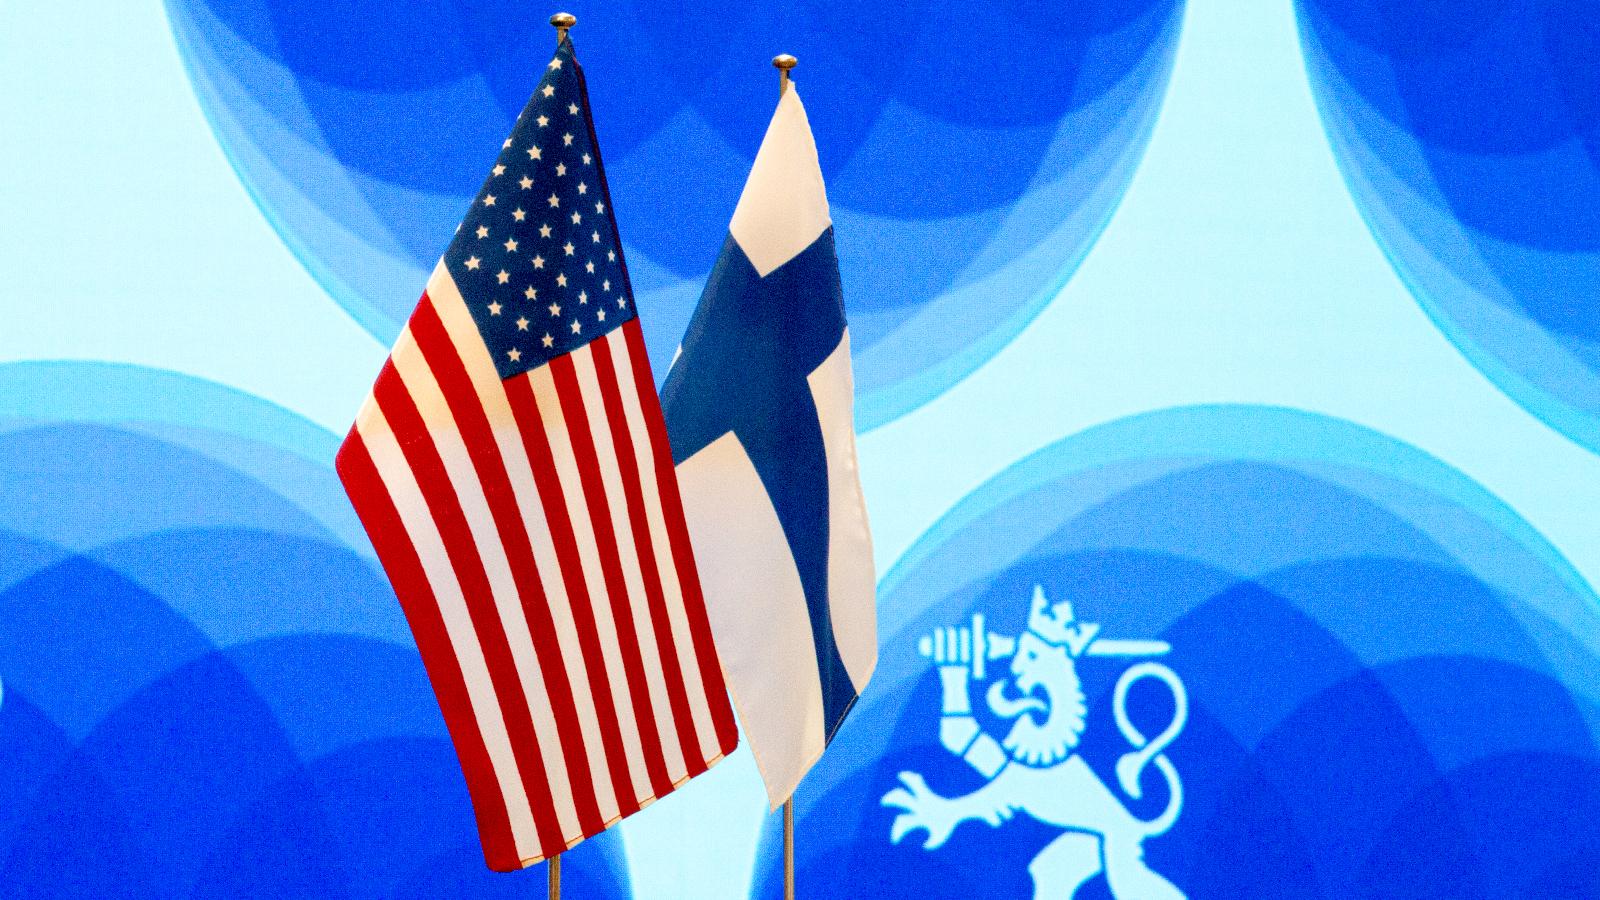 Suomen ja Yhdysvaltojen liput.